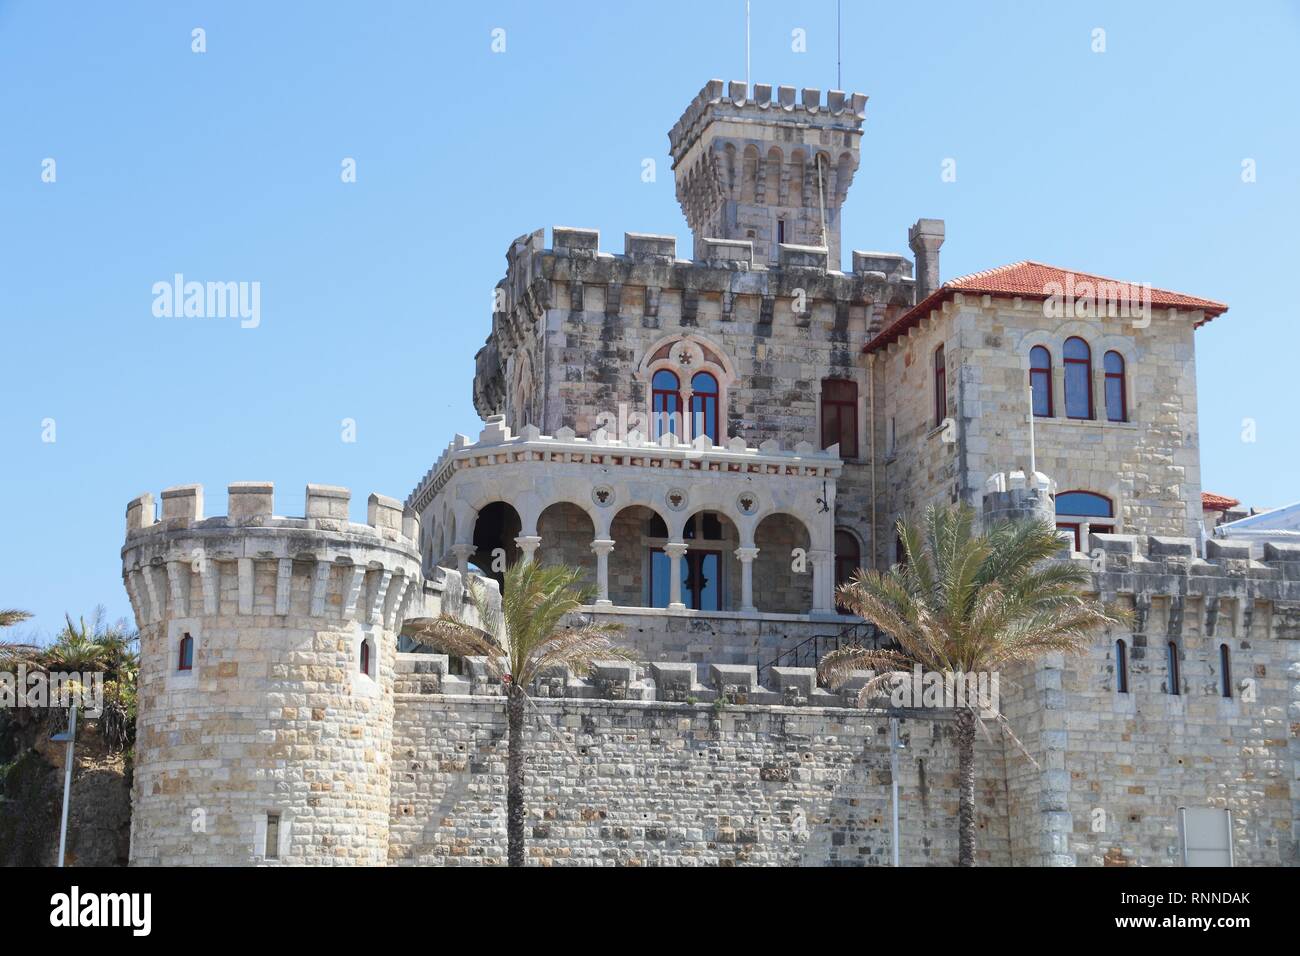 Forte Da Cruz castle in Estoril, Portugal. Stock Photo